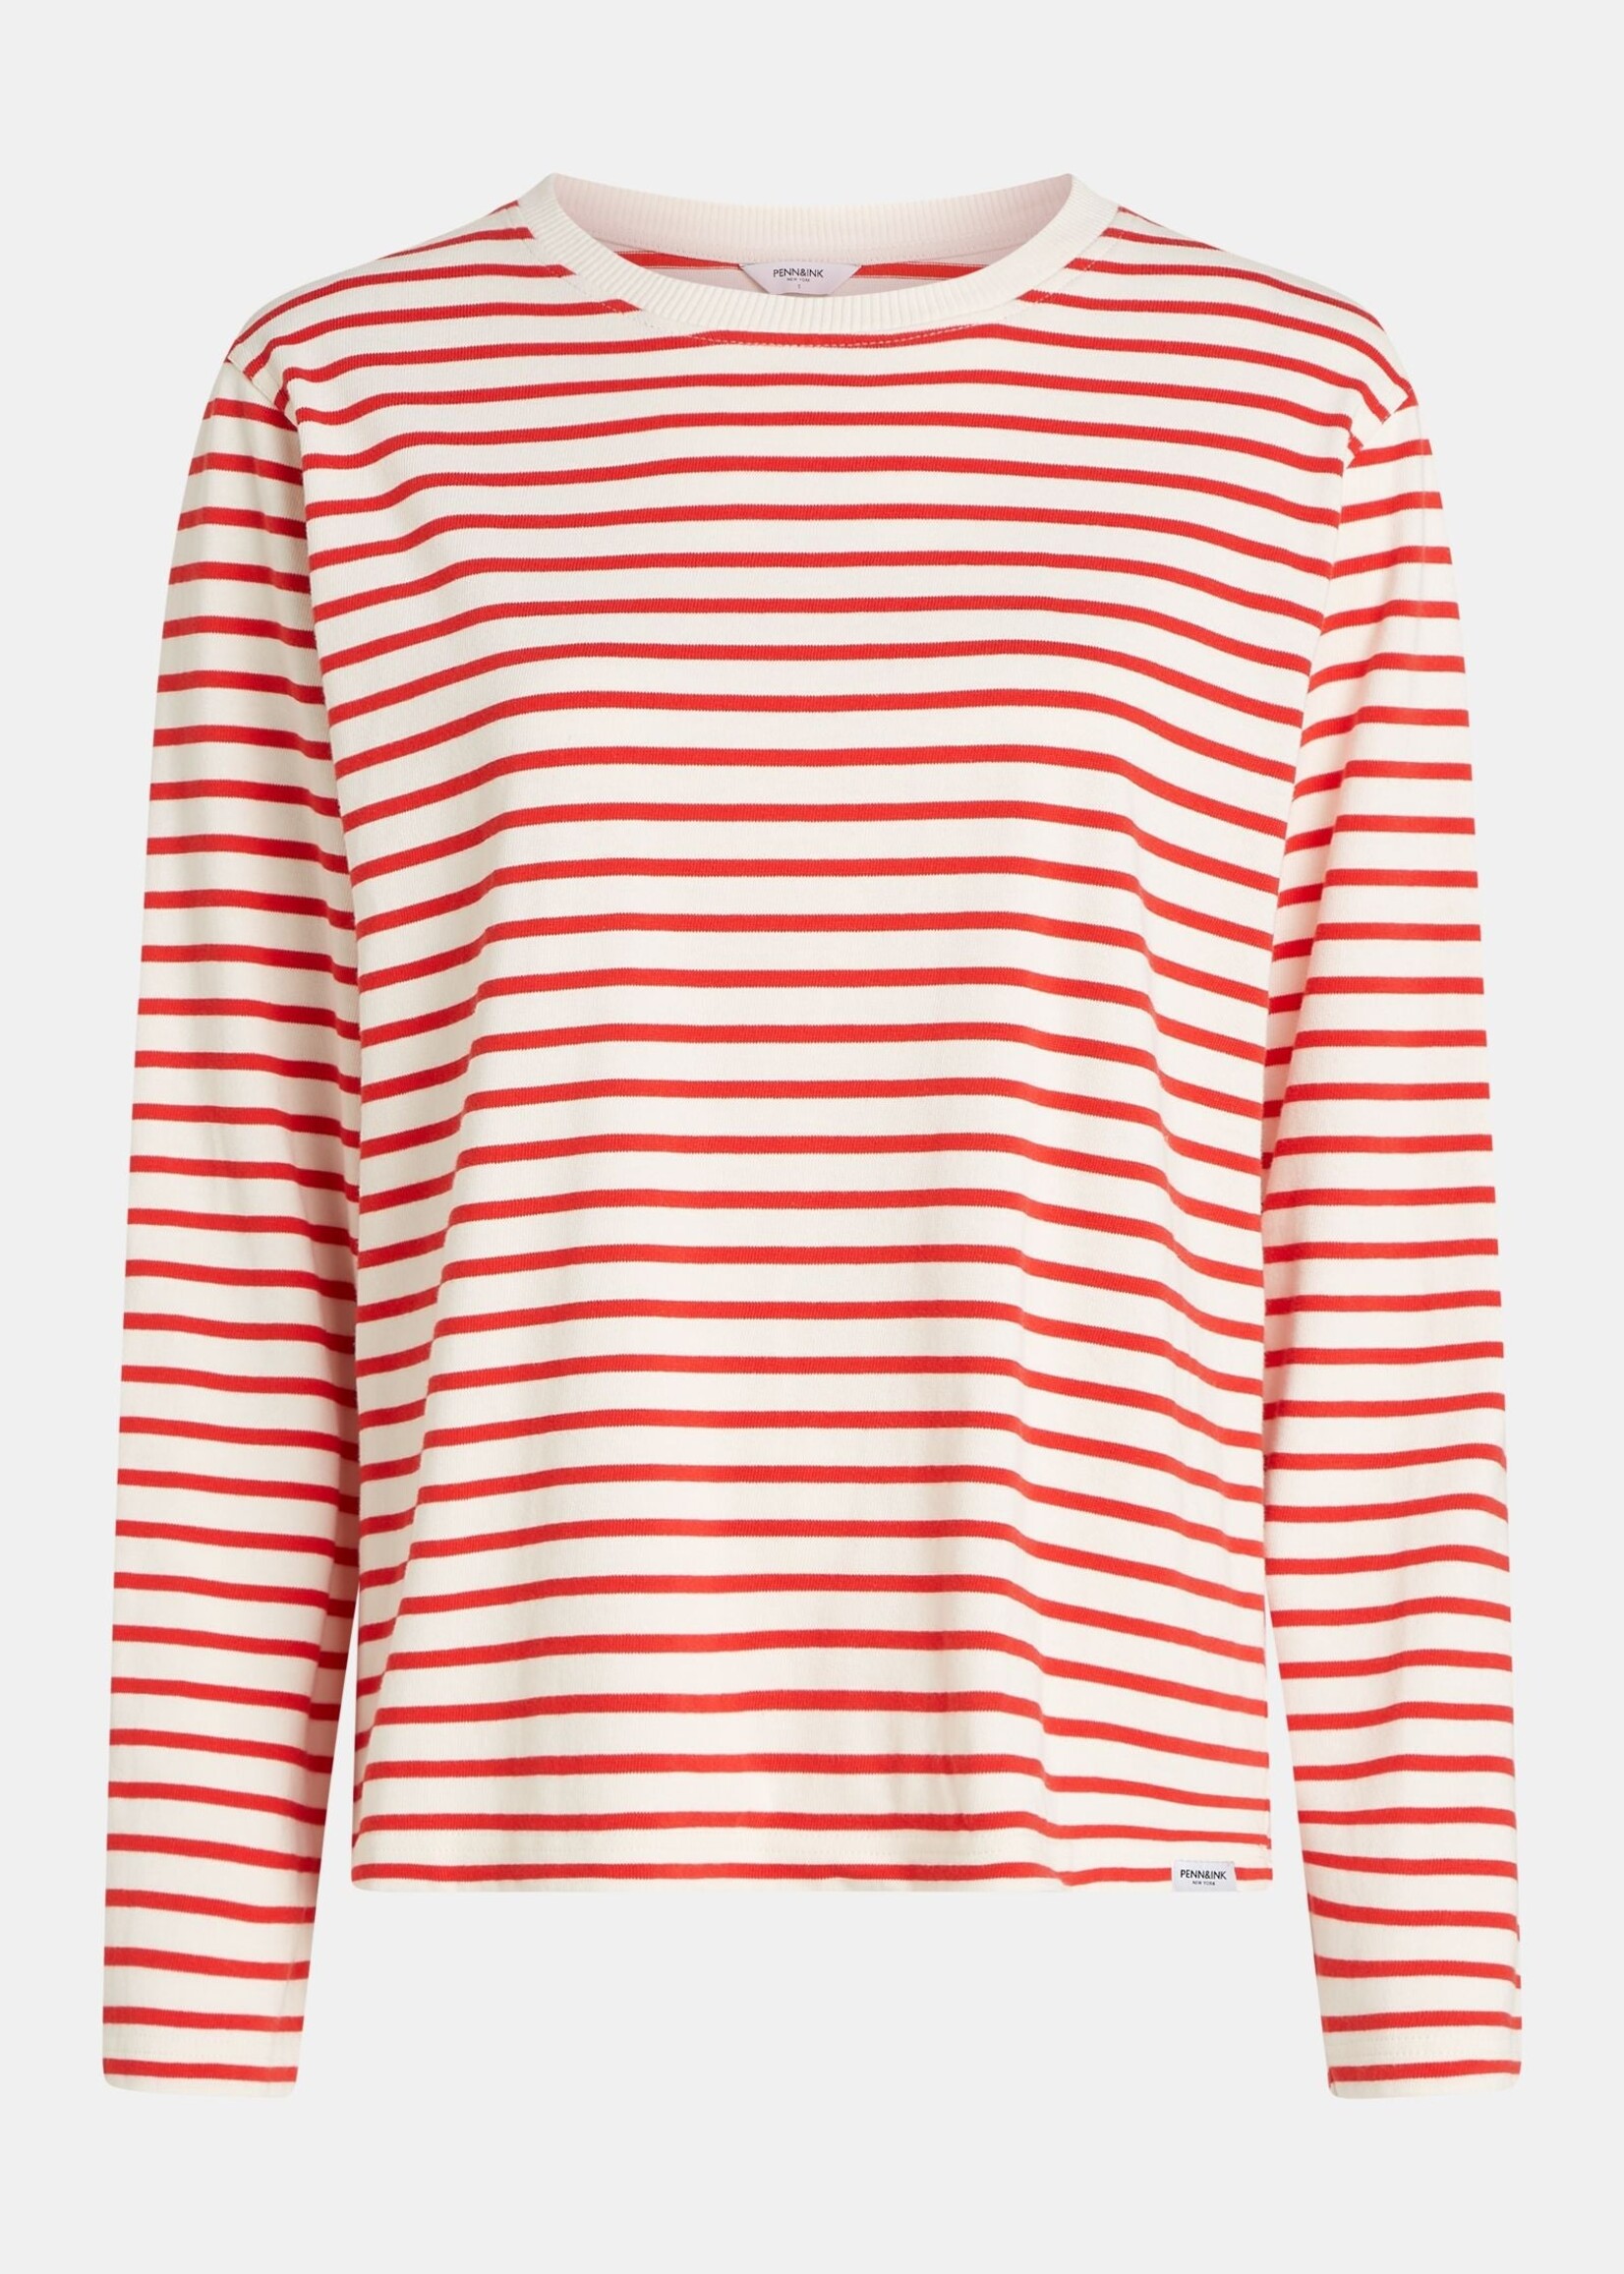 PENN & INK Sweater Stripe